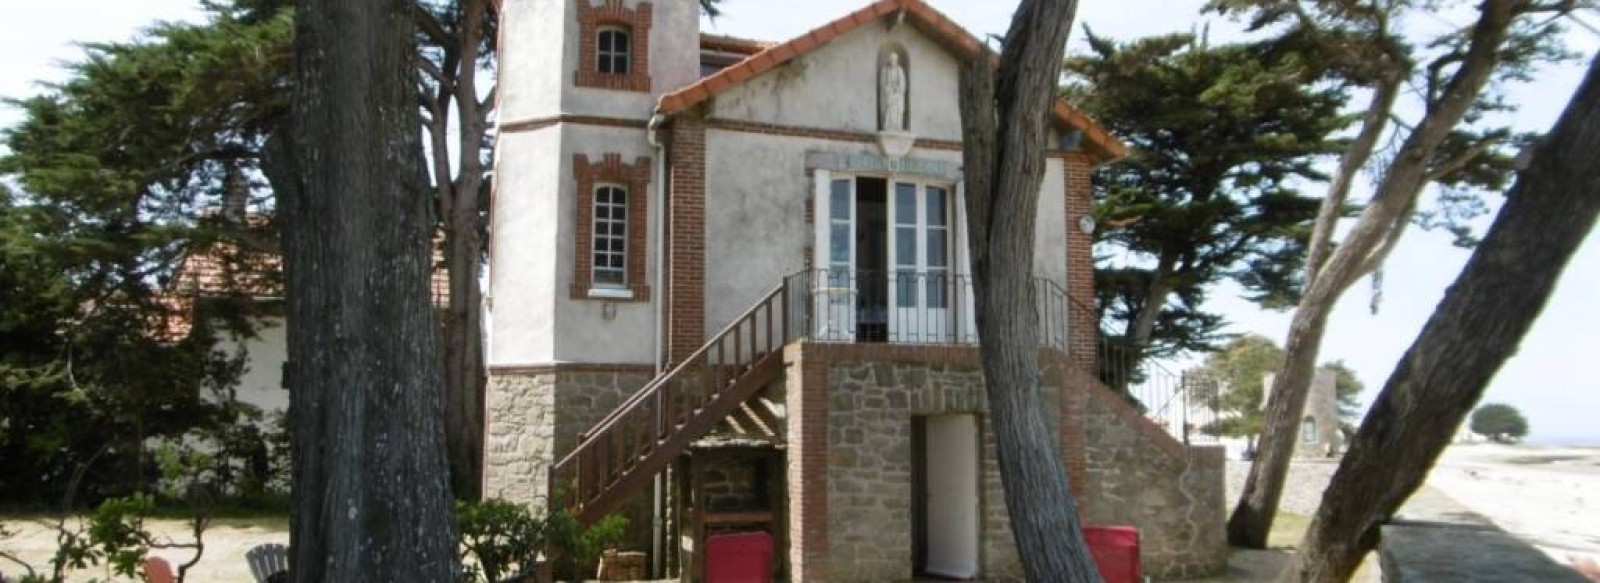 Villa avec jardin a Noirmoutier en l'Ile